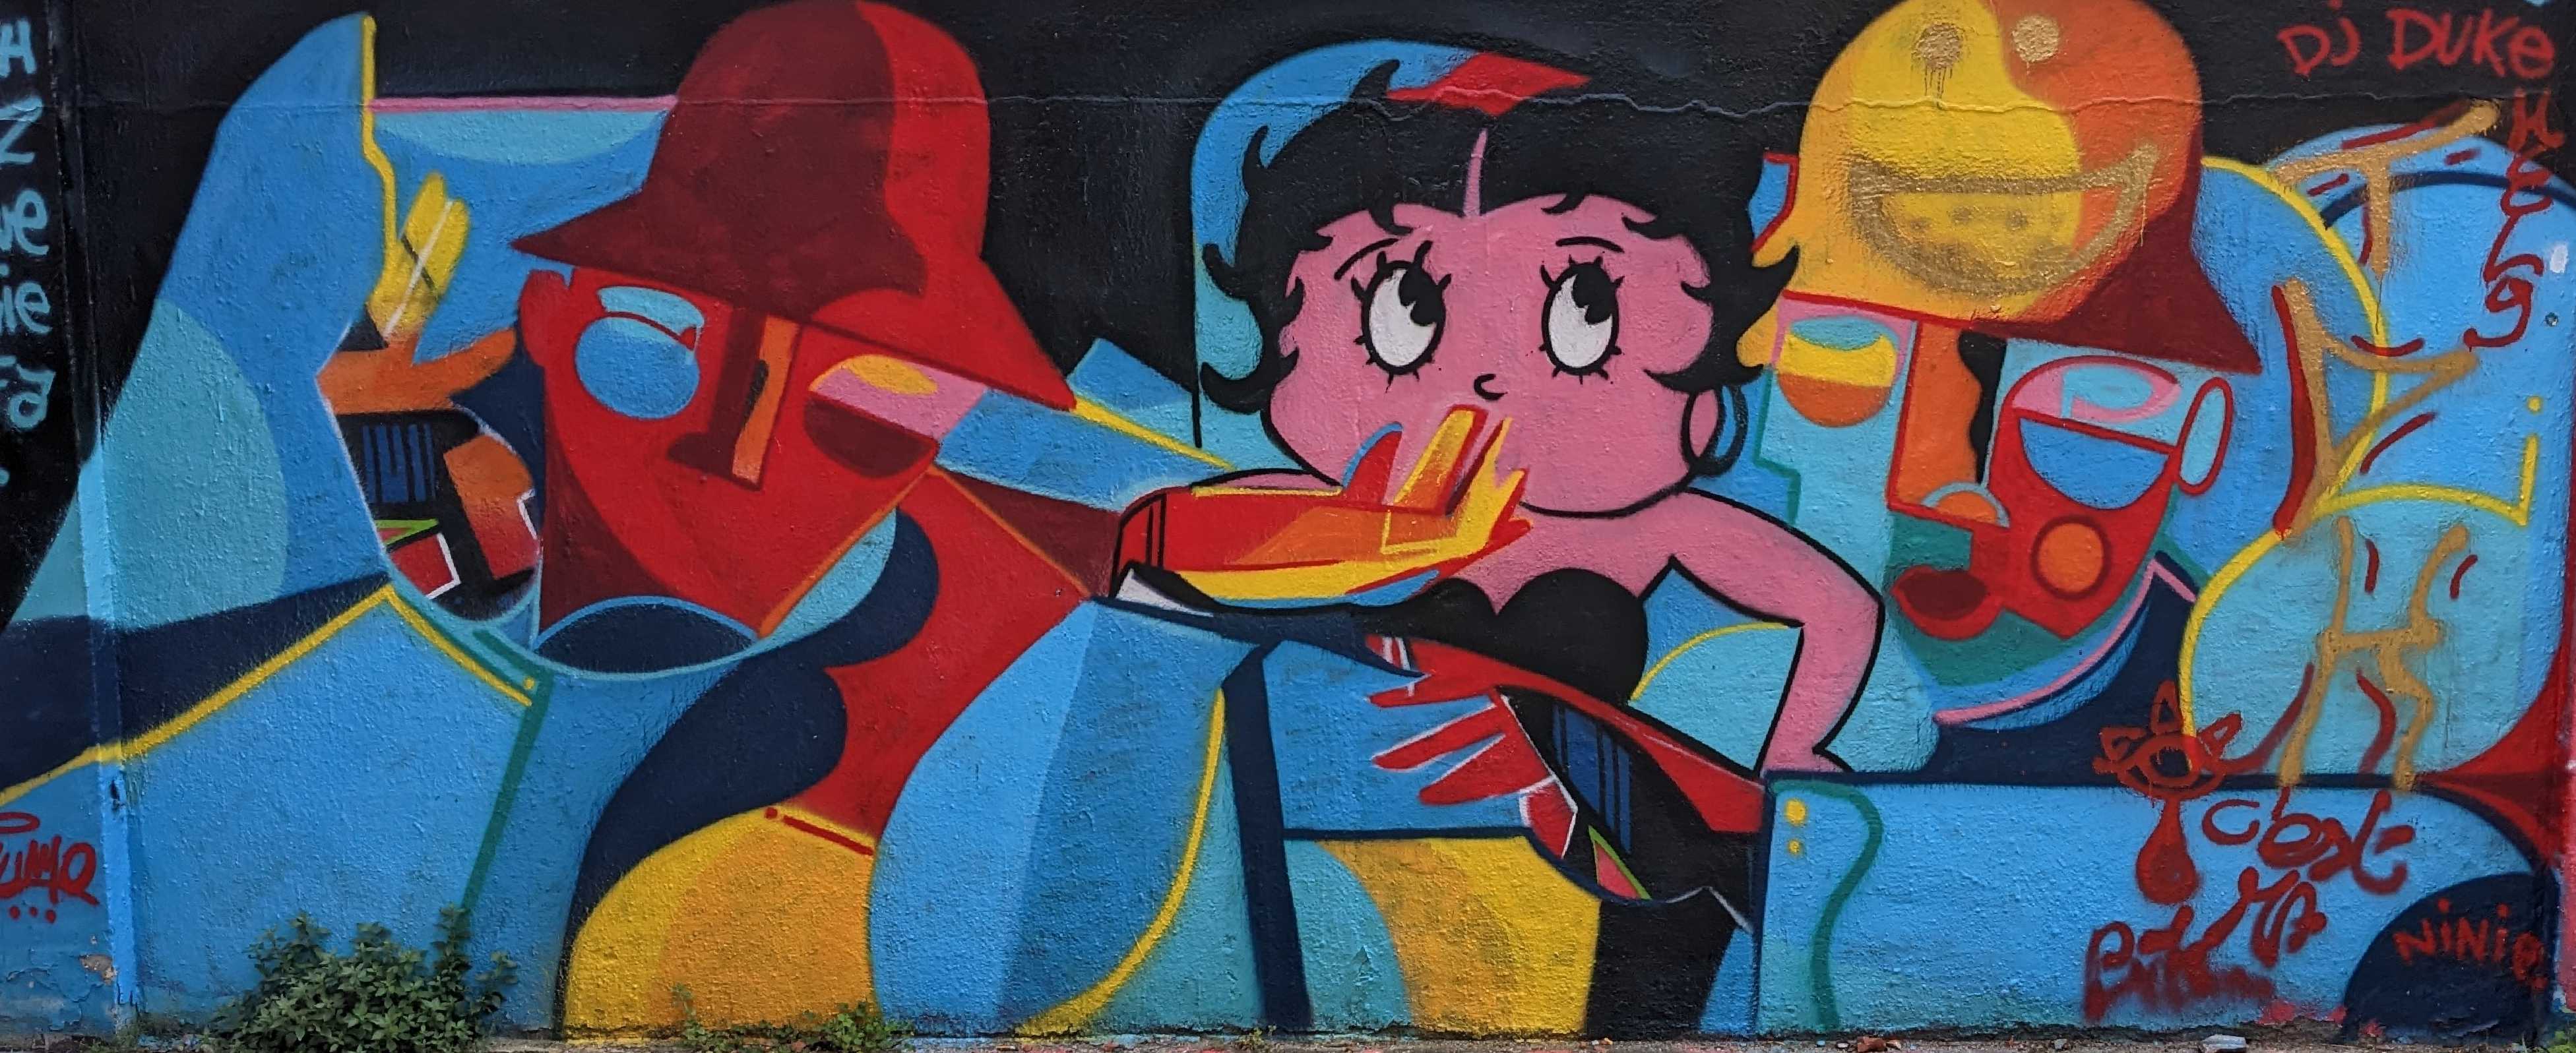 Graffiti 7030  capturé par Jacques Lrz à Valence France